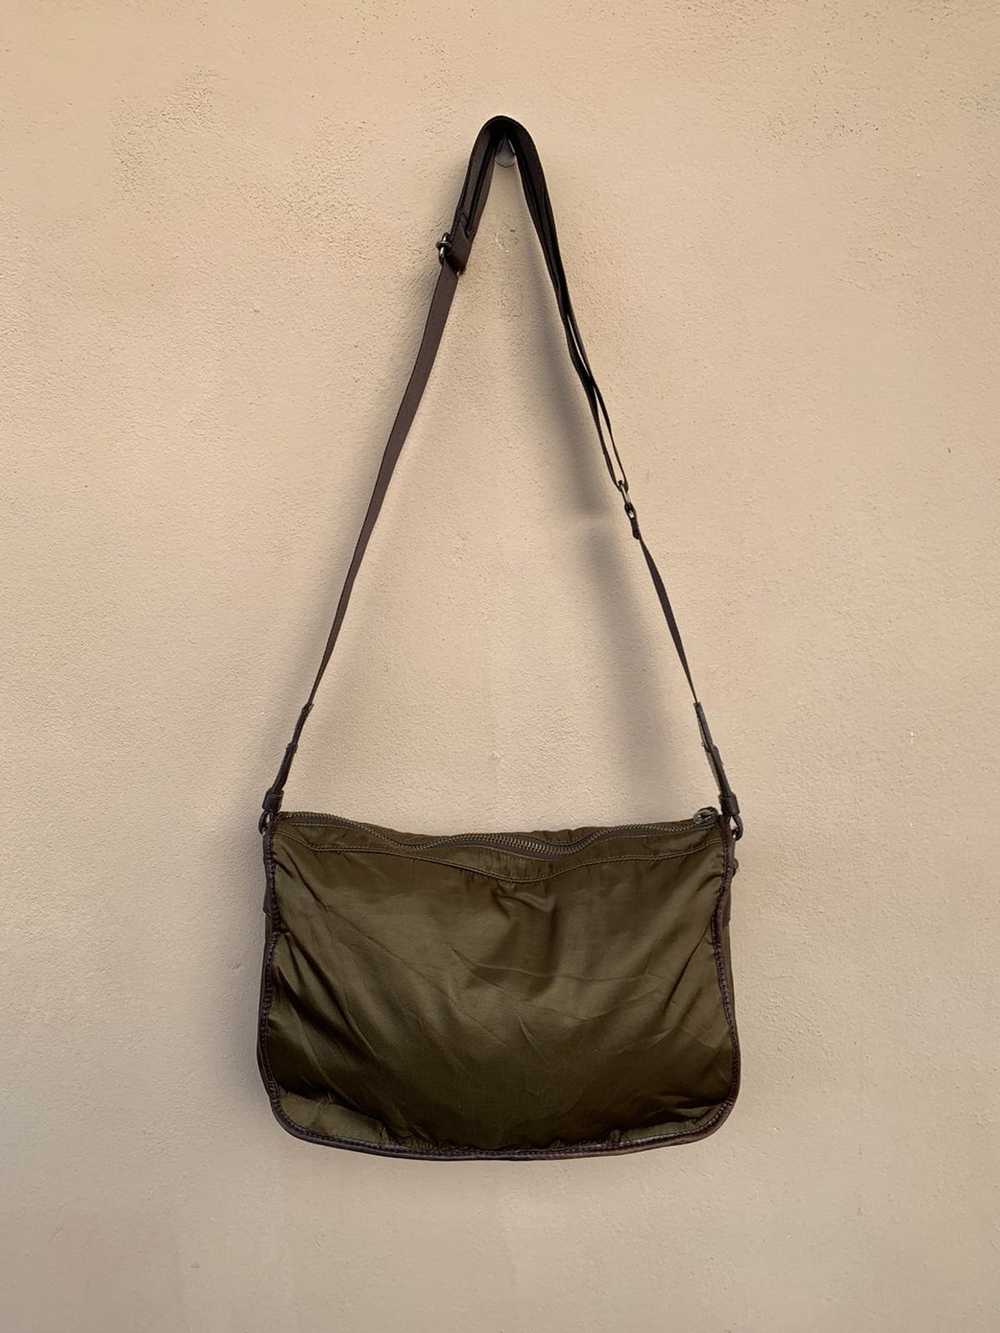 Agnes B. × Rare Agnes B sling bag nice design - image 2